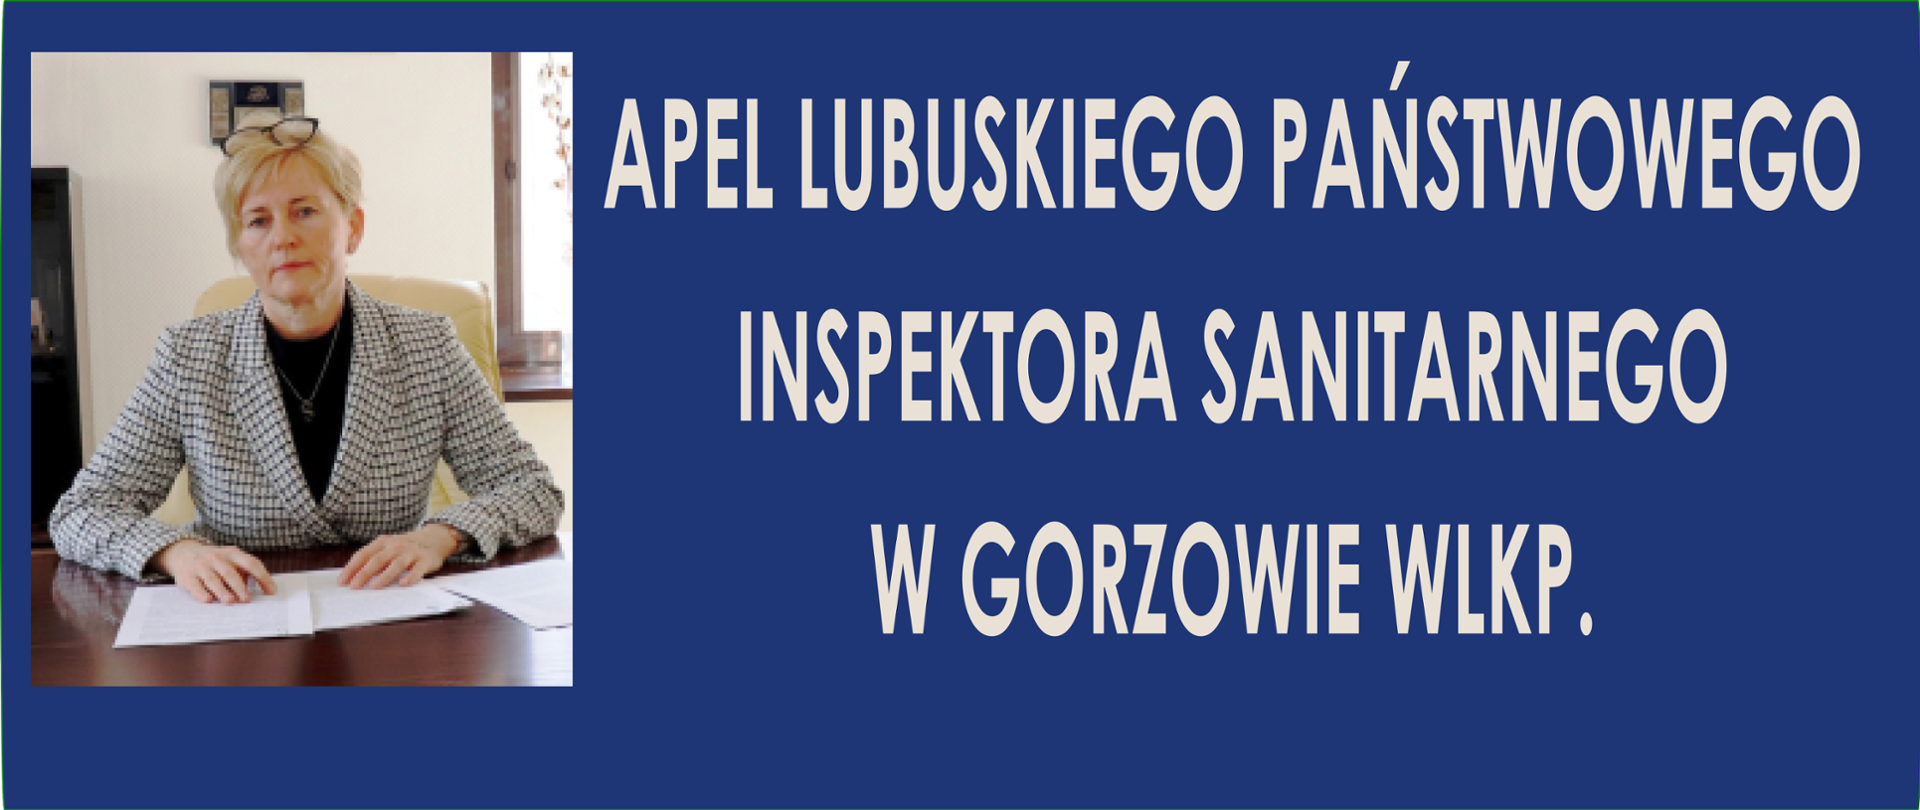 Zdjęcie LPIS z napisem APEL LUBUSKIEGO PAŃSTWOWEGO INSPEKTORA SANITARNEGO W GORZOWIE WLKP.